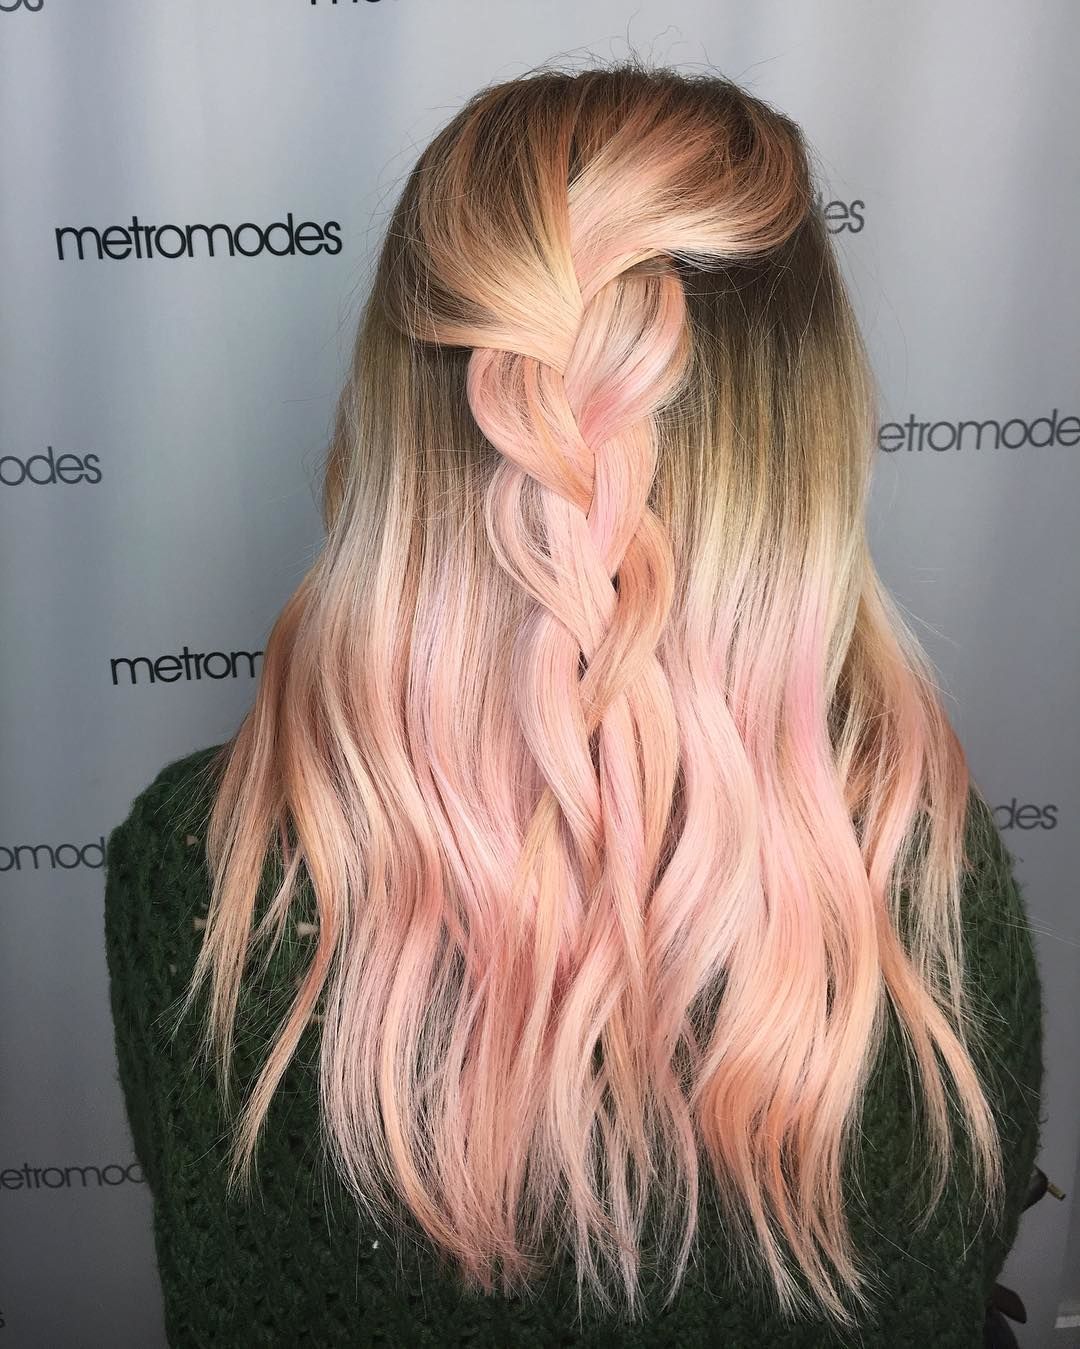 Treccia su capelli con sfumature rosa - @itsevanturkel